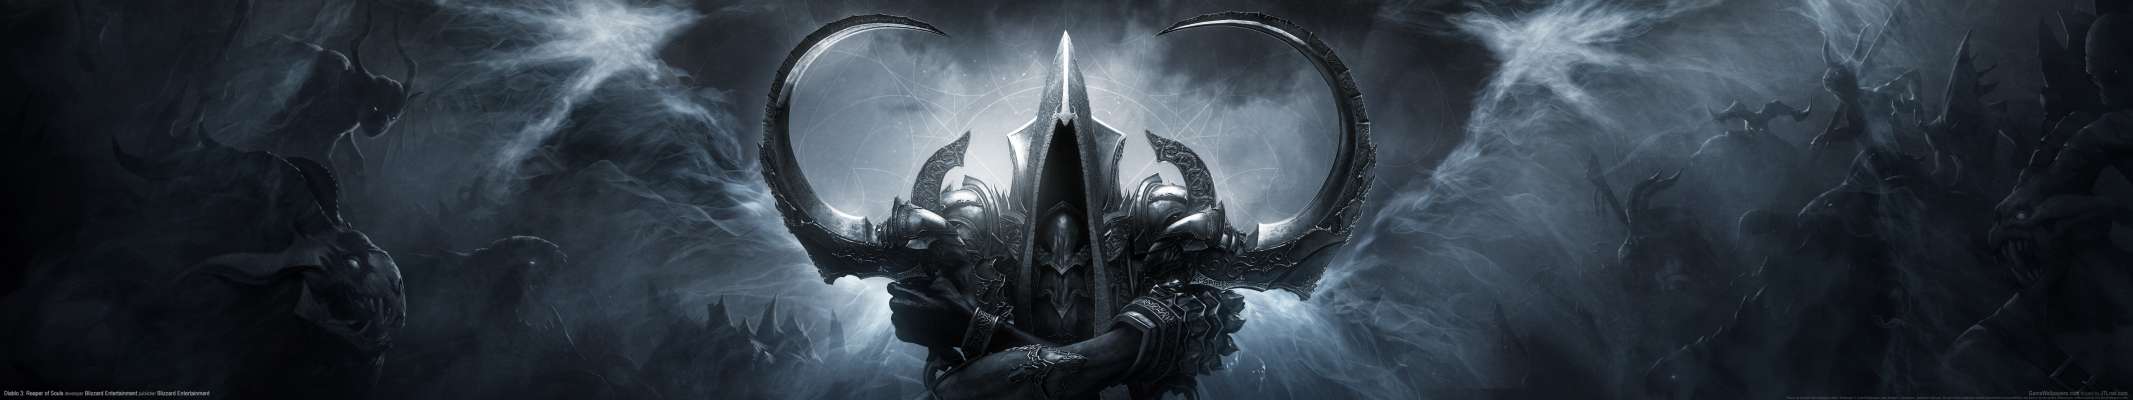 Diablo 3: Reaper of Souls triple screen achtergrond